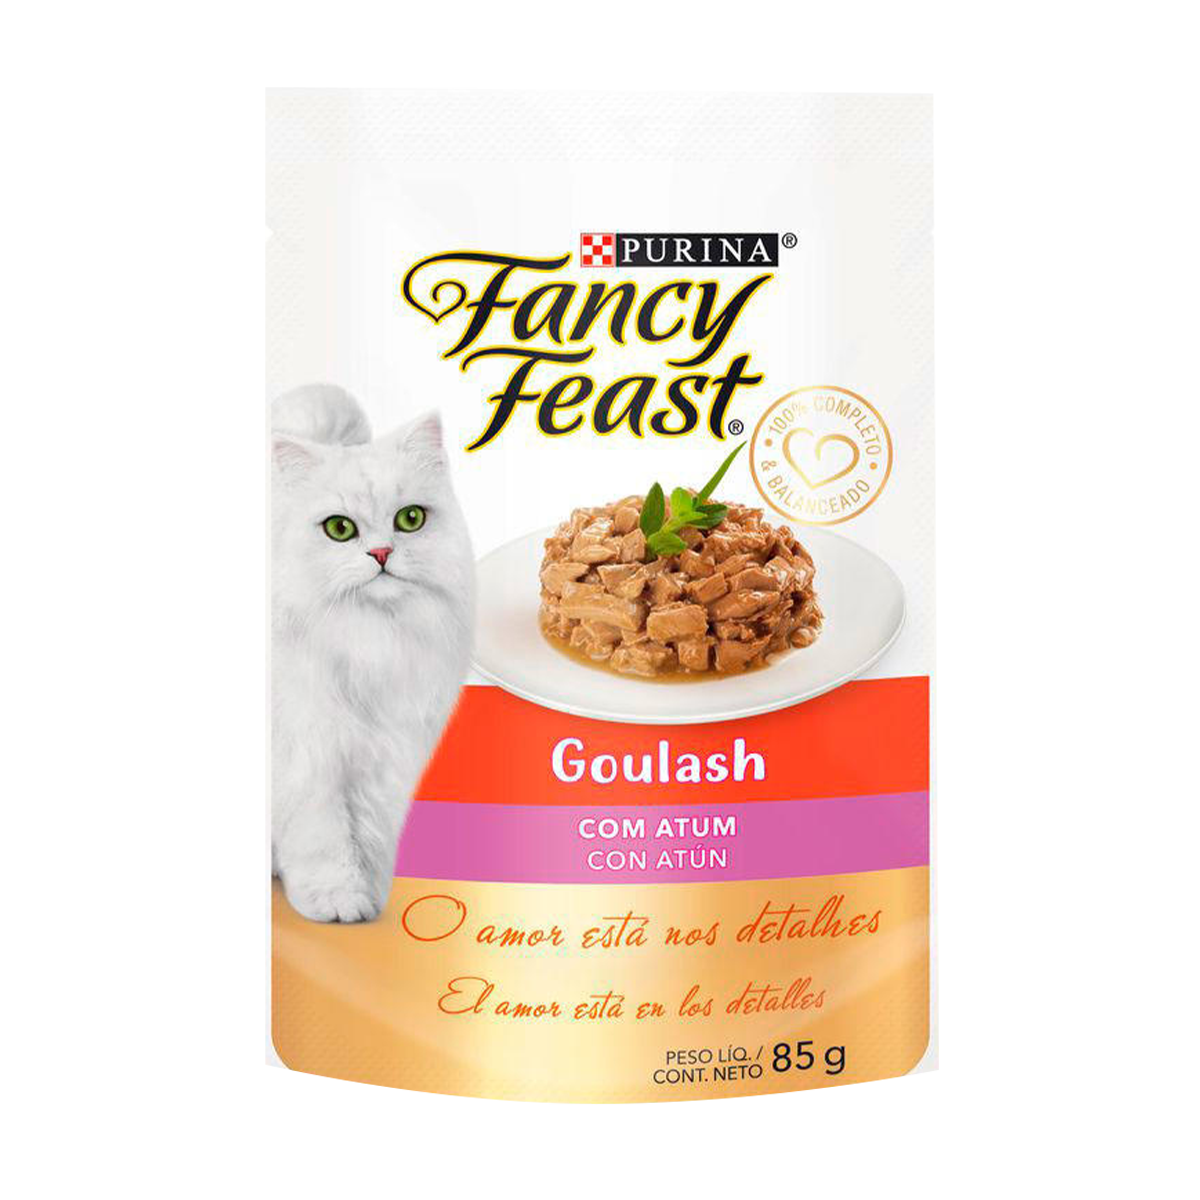 fancy-feast-goulash-atum%20%281%29.png